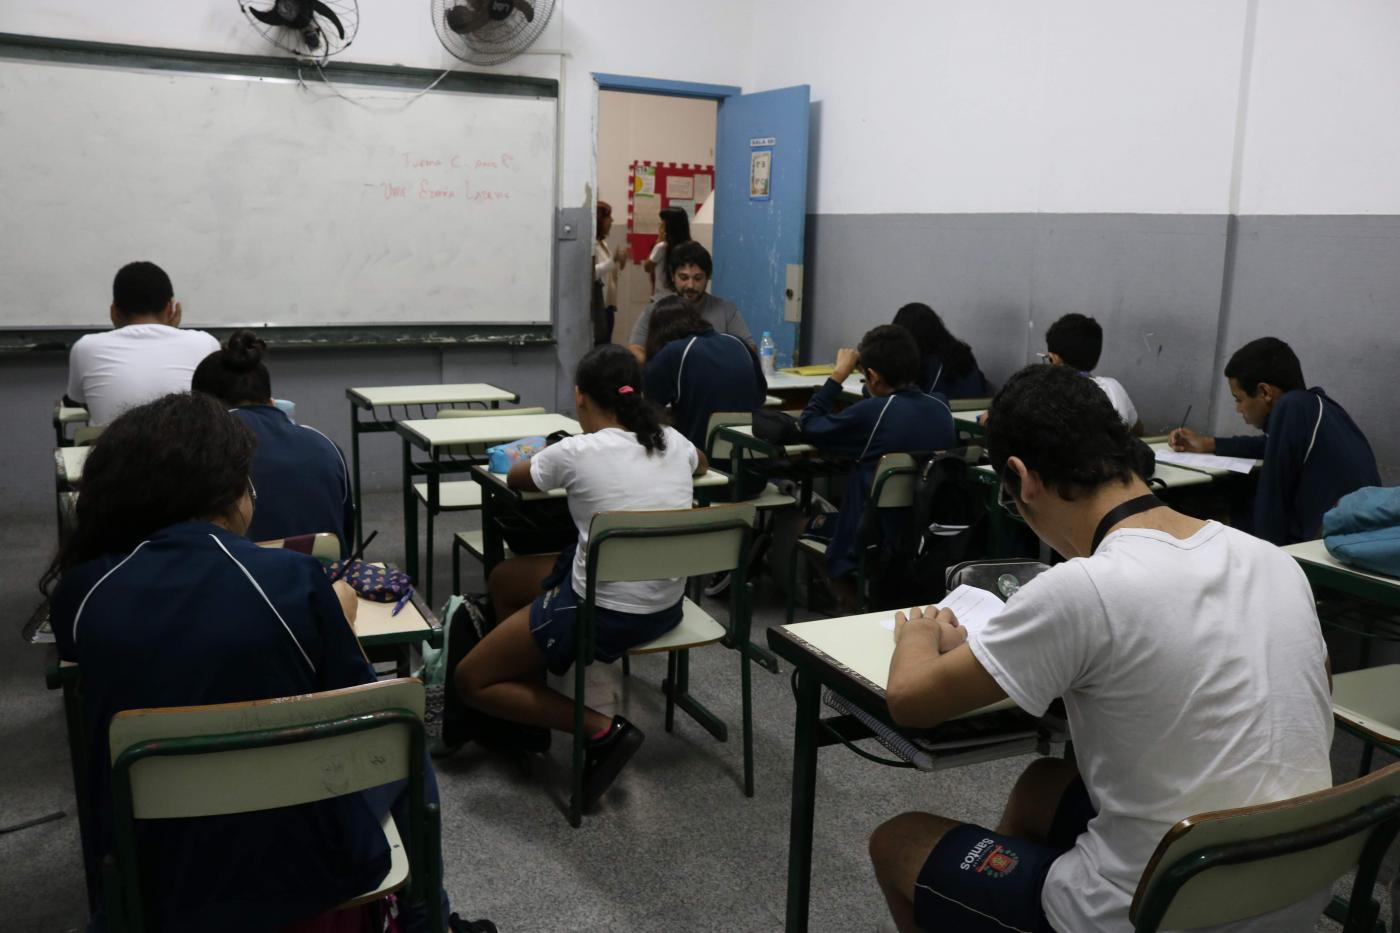 Alunos estão em sala de aula, sentados escrevendo em papéis. Todos estão de costas para a imagem. #Pracegover